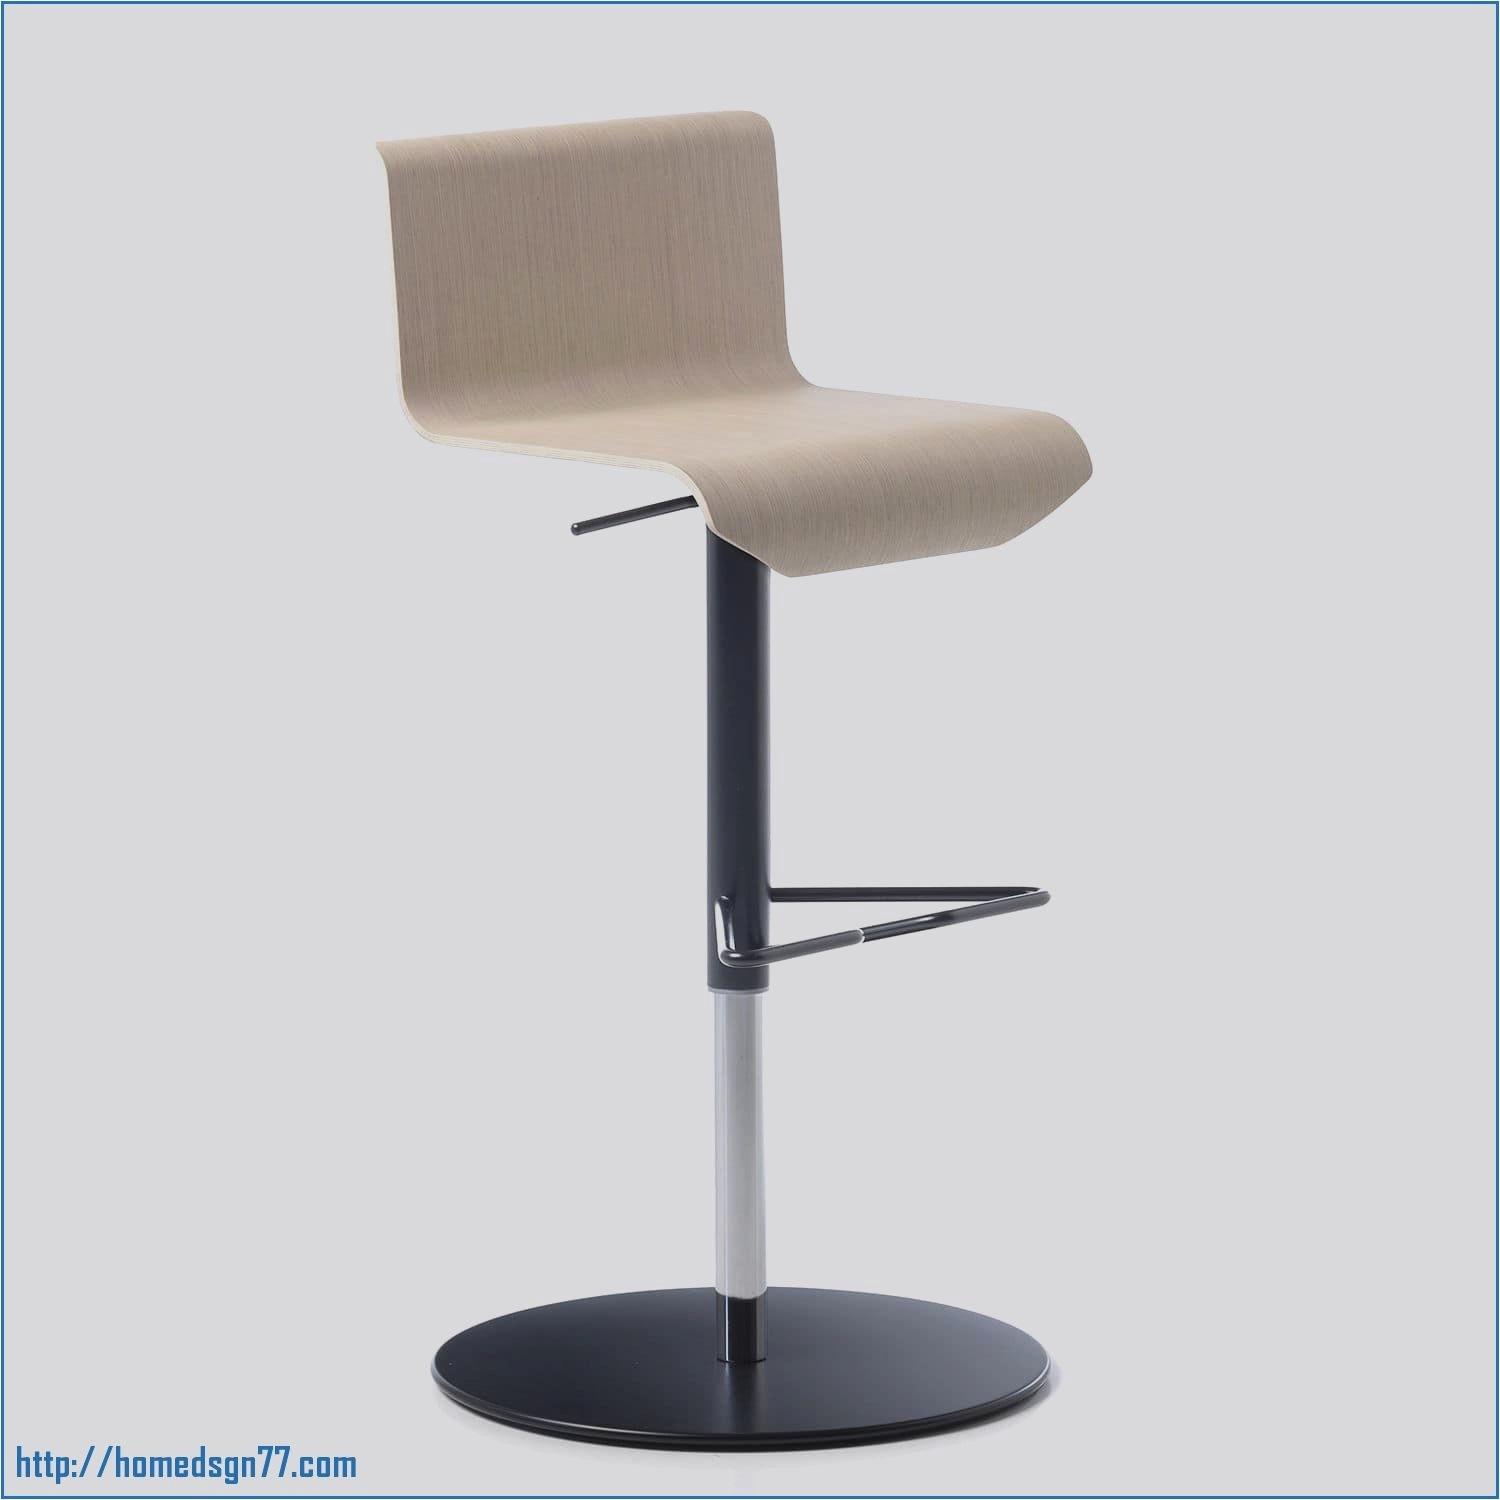 chaise de bureau carrefour nouveau canape carrefour elegant chaise longue carrefour chaise pliante of chaise de bureau carrefour